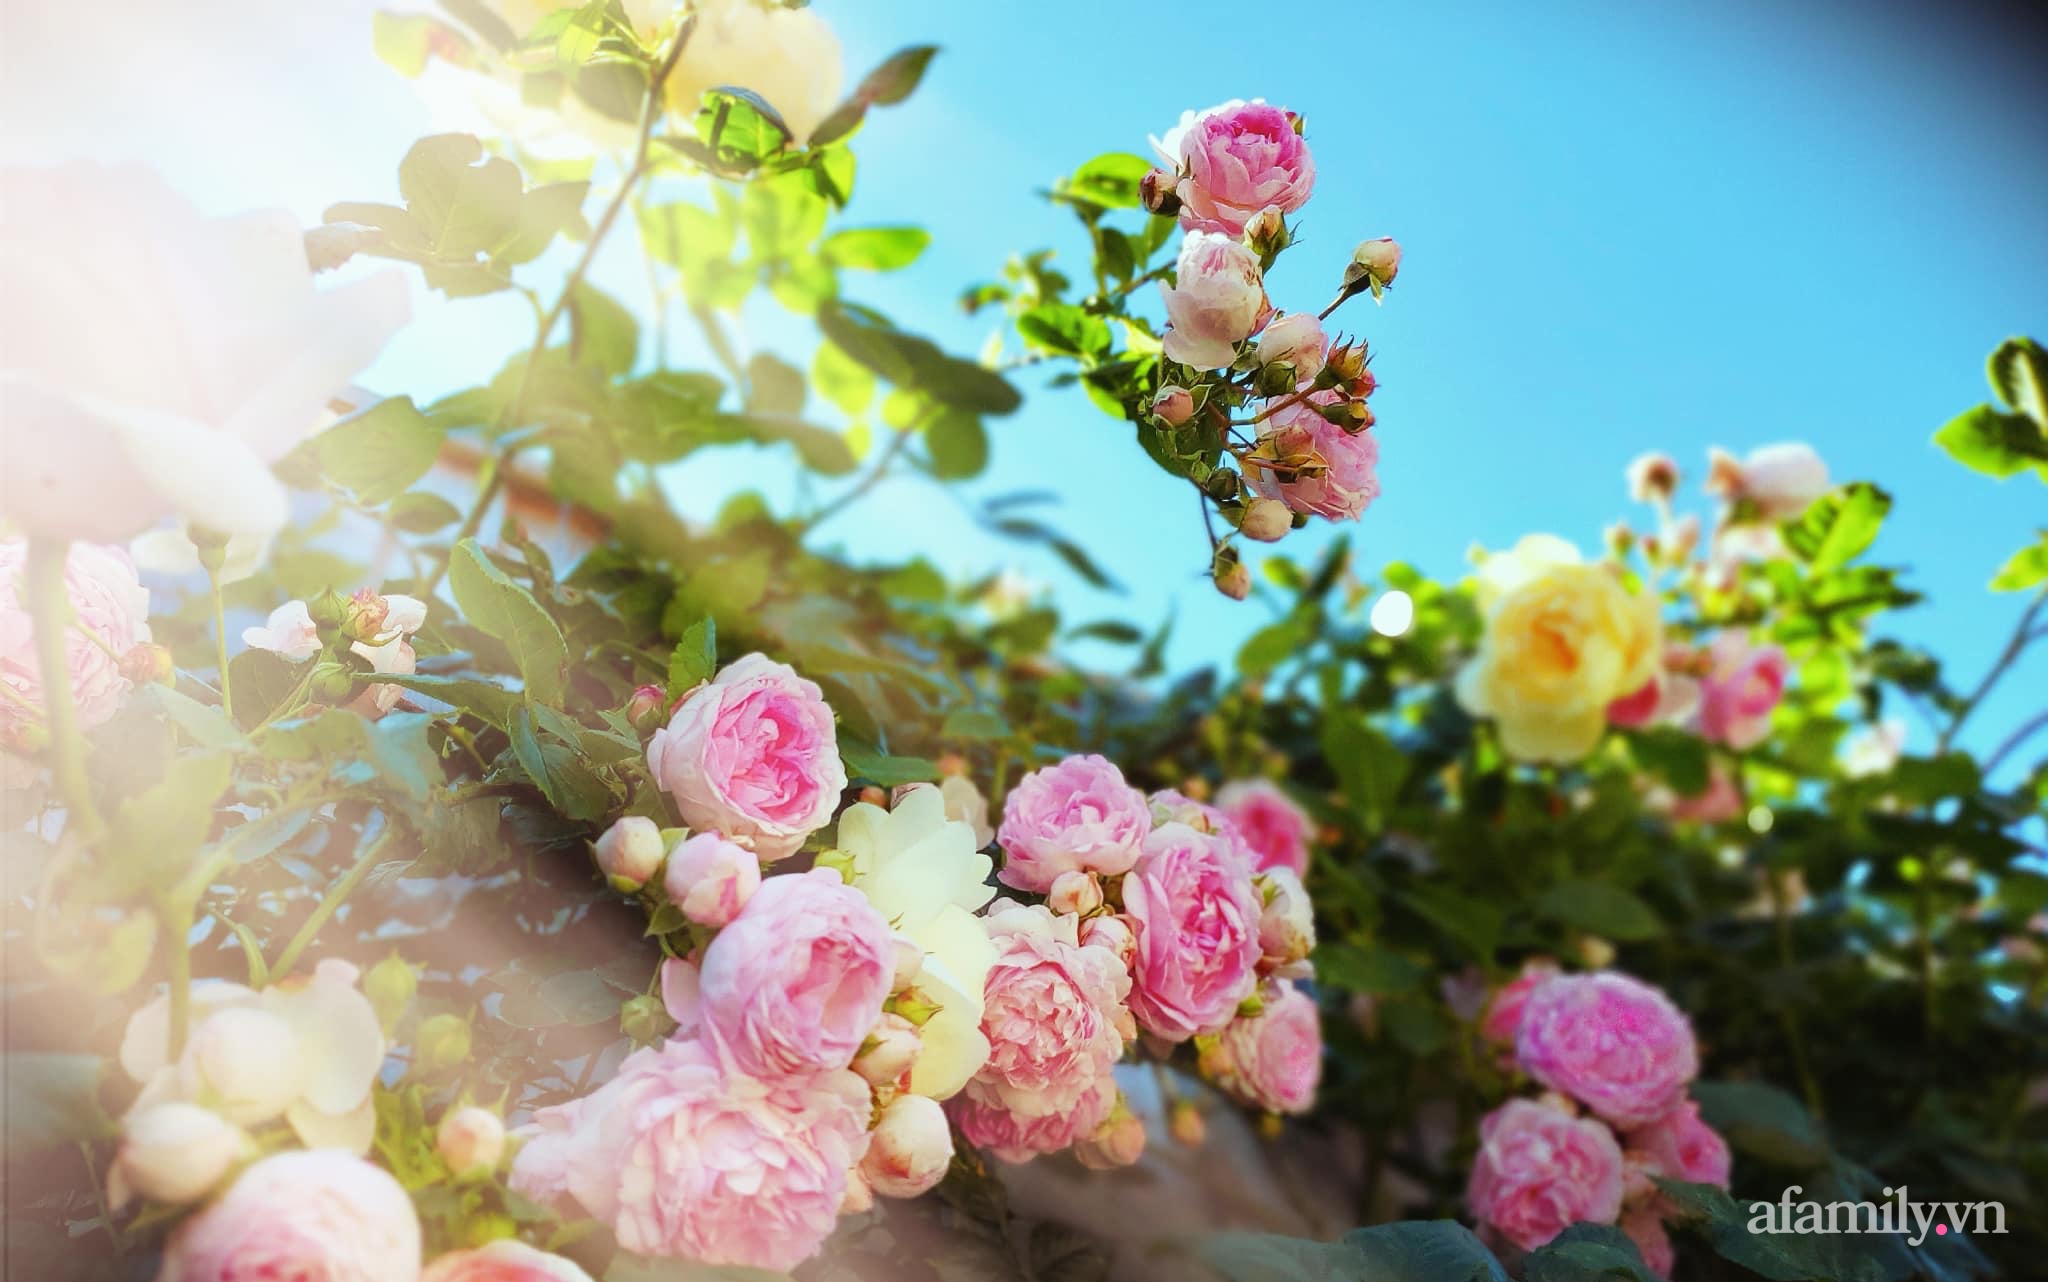 Vườn hồng 250m² ngát hương rực rỡ sắc màu đẹp như cổ tích của mẹ Việt ở Úc - Ảnh 17.